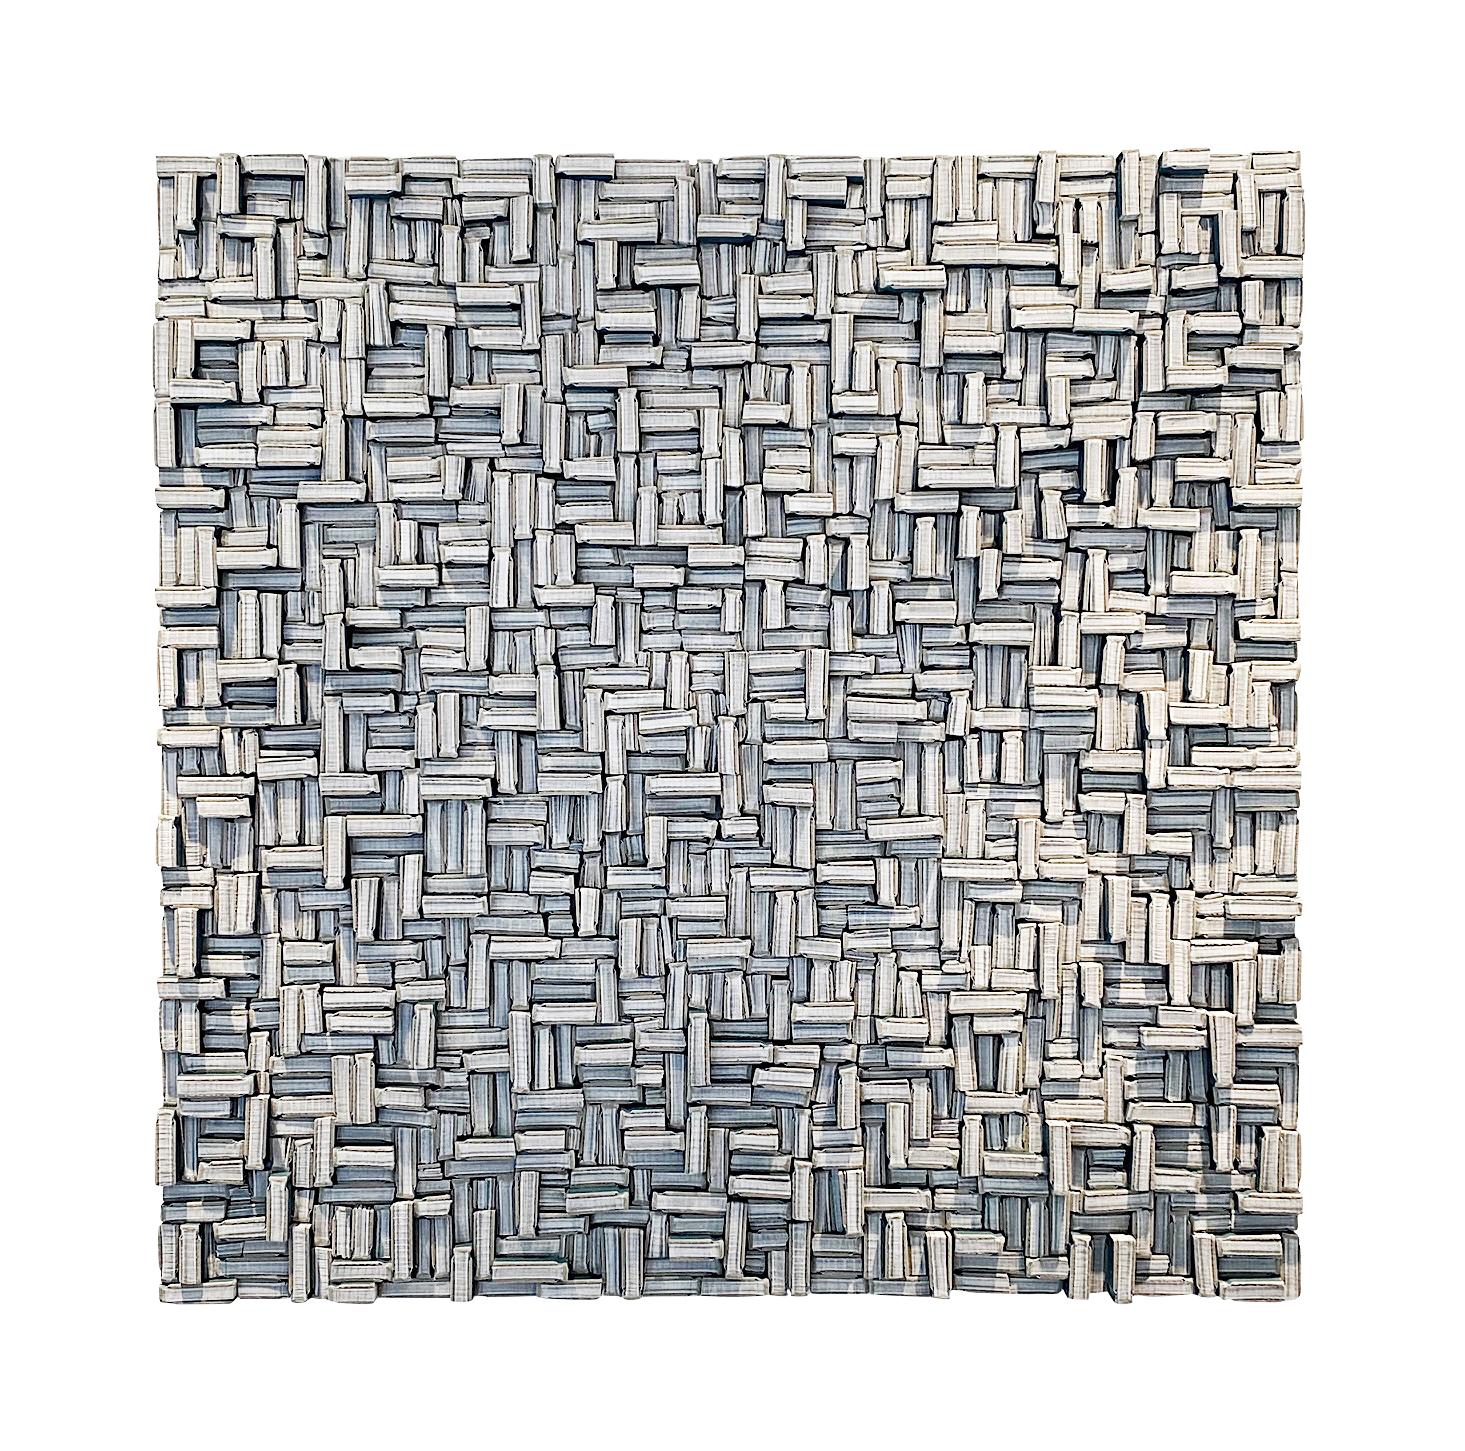 Der zeitgenössische Künstler Guy Leclef aus seiner Sammlung von Papierarbeiten.
Ausgeschnittene Stücke von kleinen, papiergebundenen Büchern mit blauem Einband.
Schneiden und Anordnen in verschiedenen Größen und Richtungen zur Schaffung von 
eine